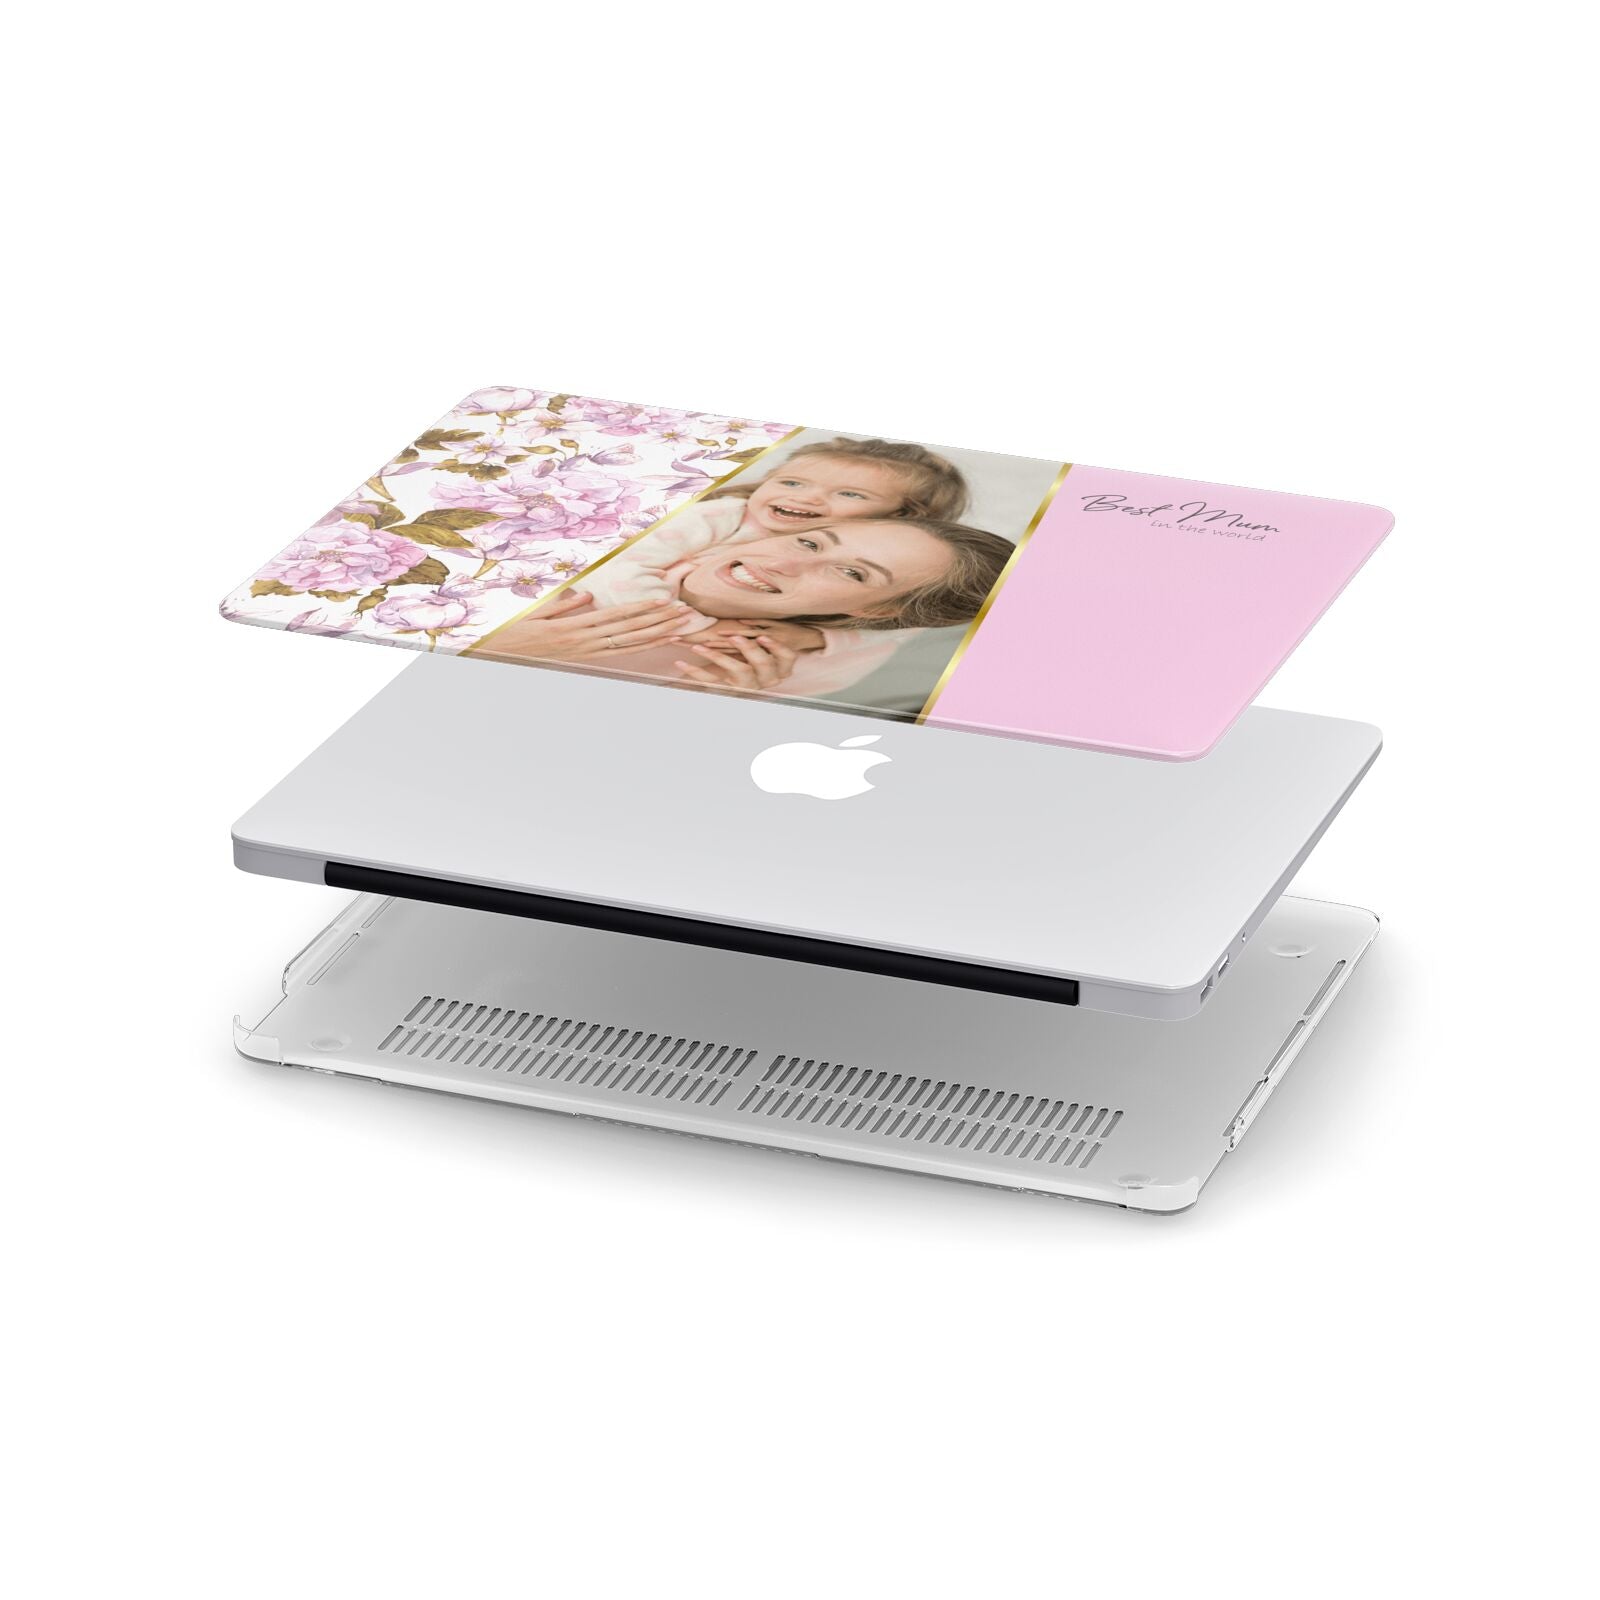 Personalised Love You Mum Apple MacBook Case in Detail